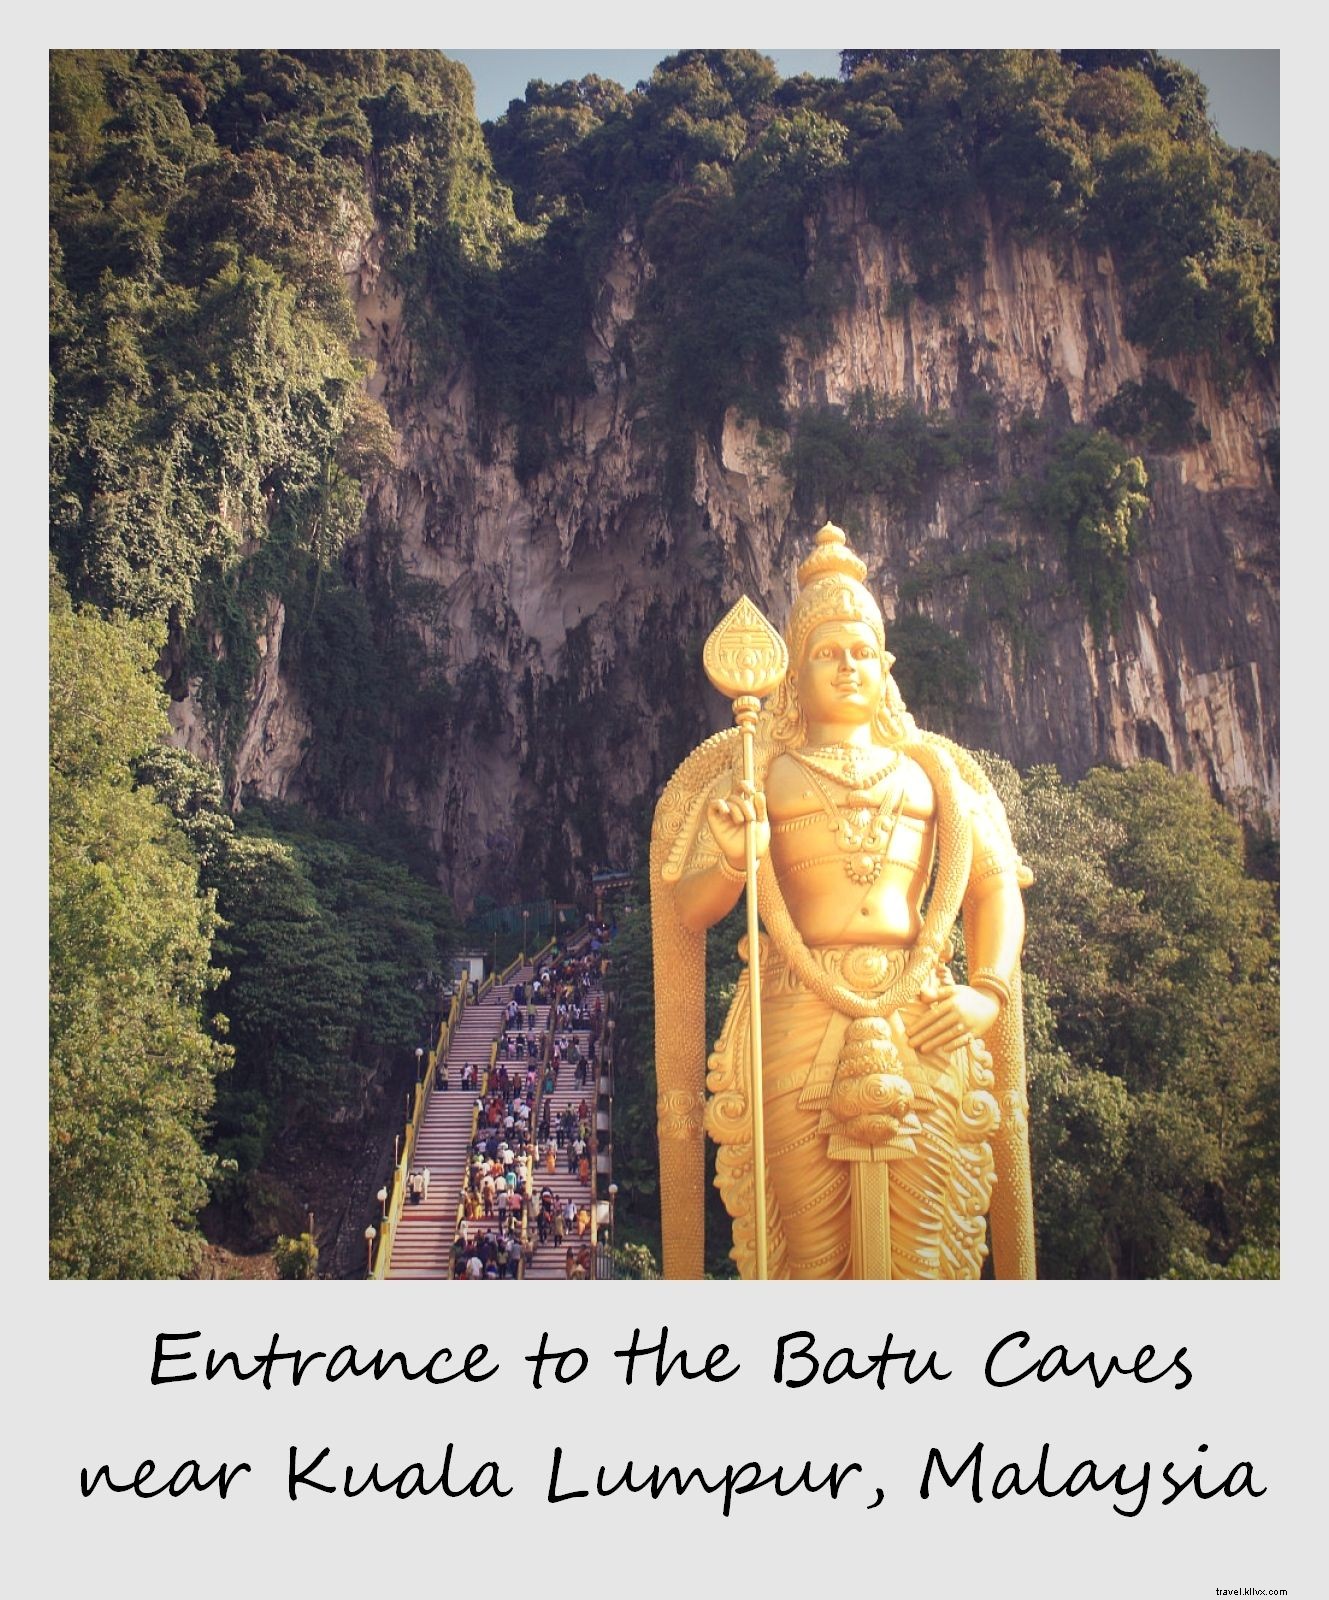 Polaroid da semana:a entrada para as Cavernas Batu perto de Kuala Lumpur, Malásia